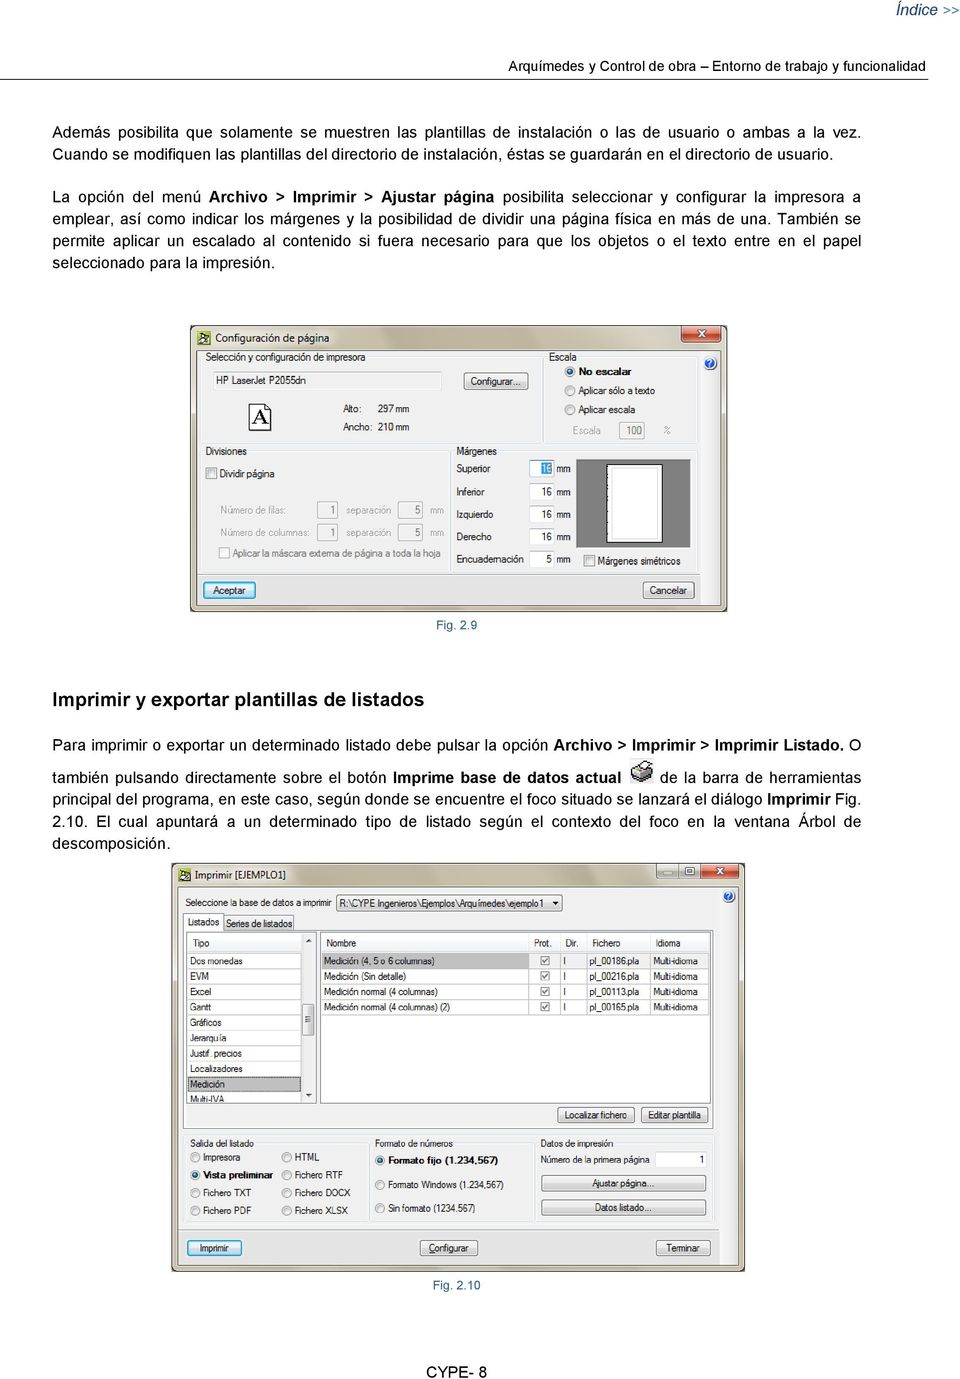 La opción del menú Archivo > Imprimir > Ajustar página posibilita seleccionar y configurar la impresora a emplear, así como indicar los márgenes y la posibilidad de dividir una página física en más